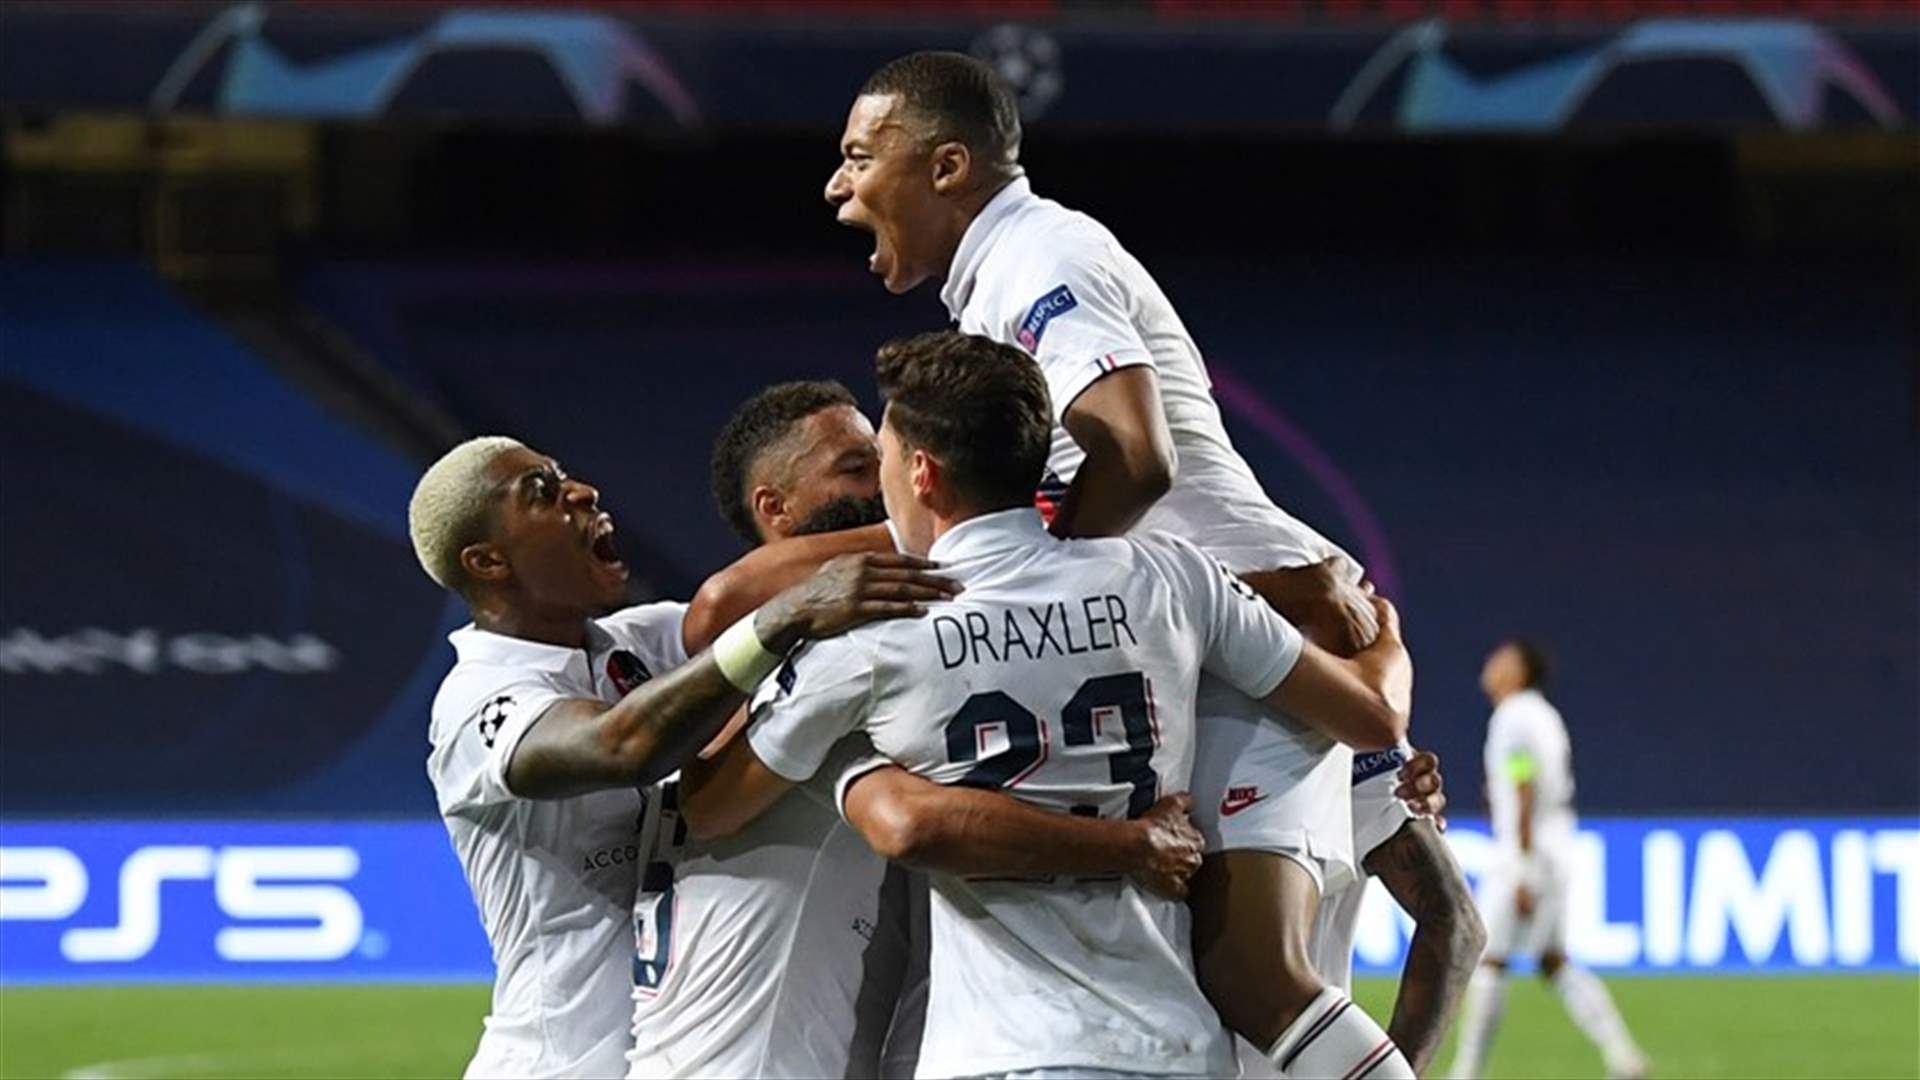 باريس سان جرمان يقلب الطاولة على أتلانتا ويتأهل إلى نصف النهائي دوري أبطال أوروبا بكرة القدم